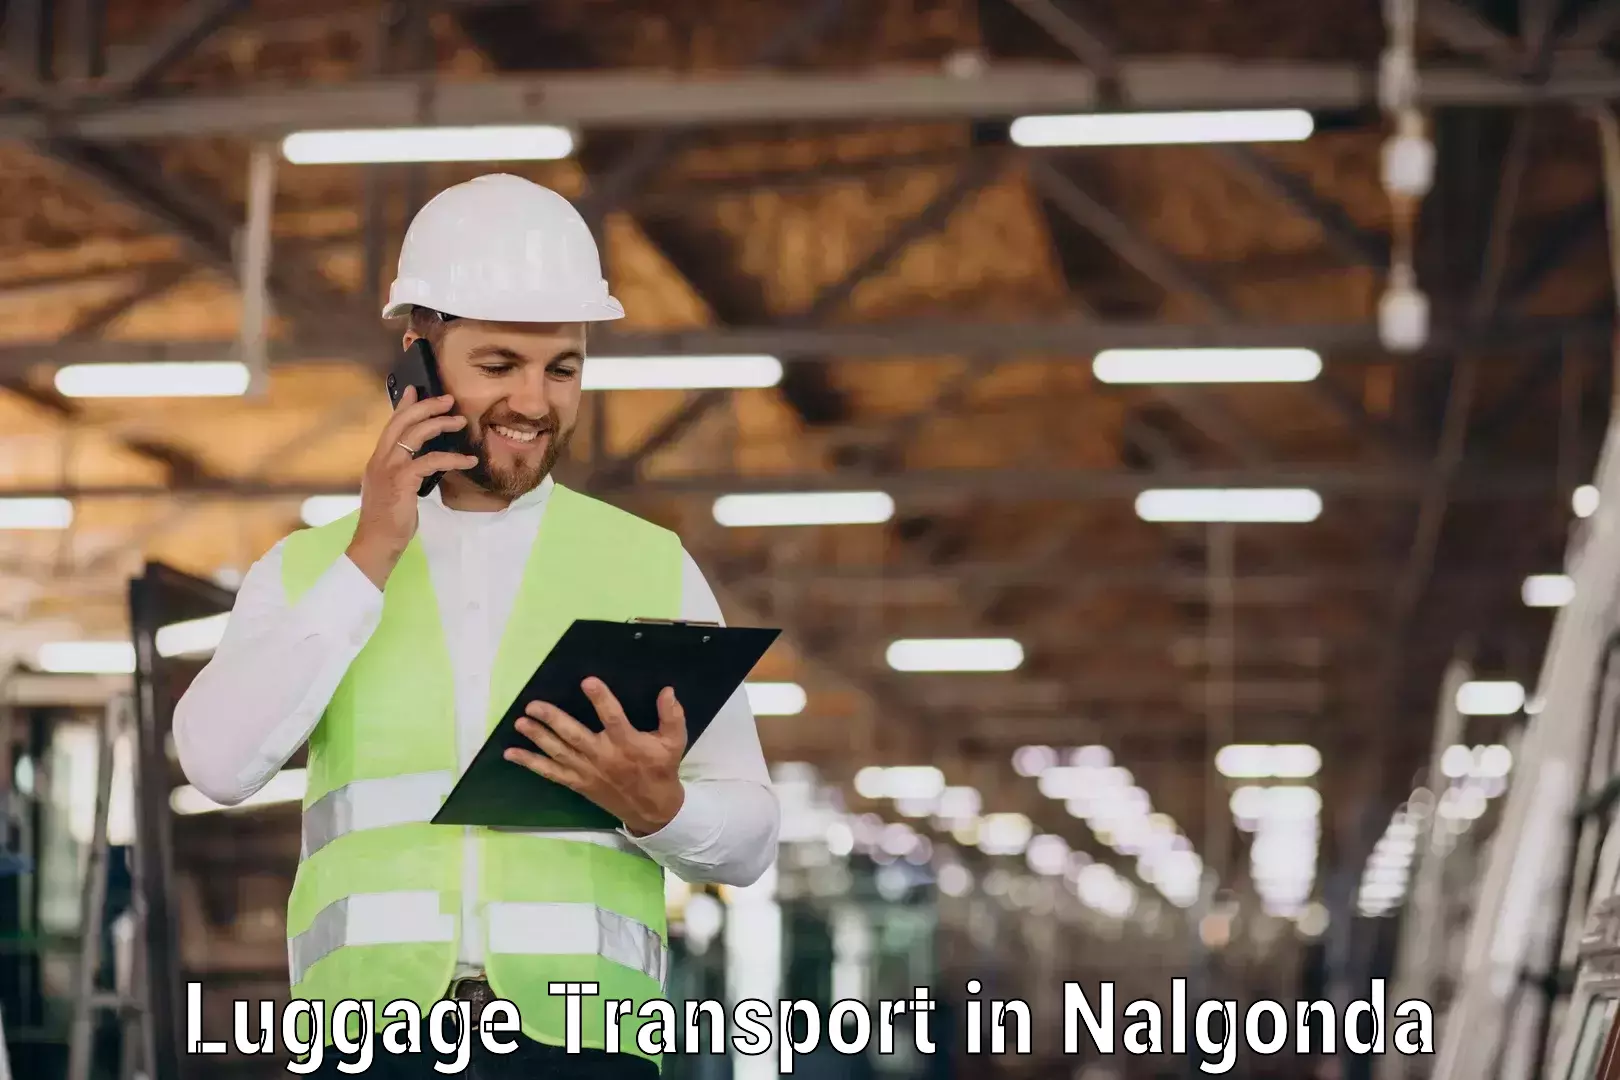 Luggage shipment processing in Nalgonda